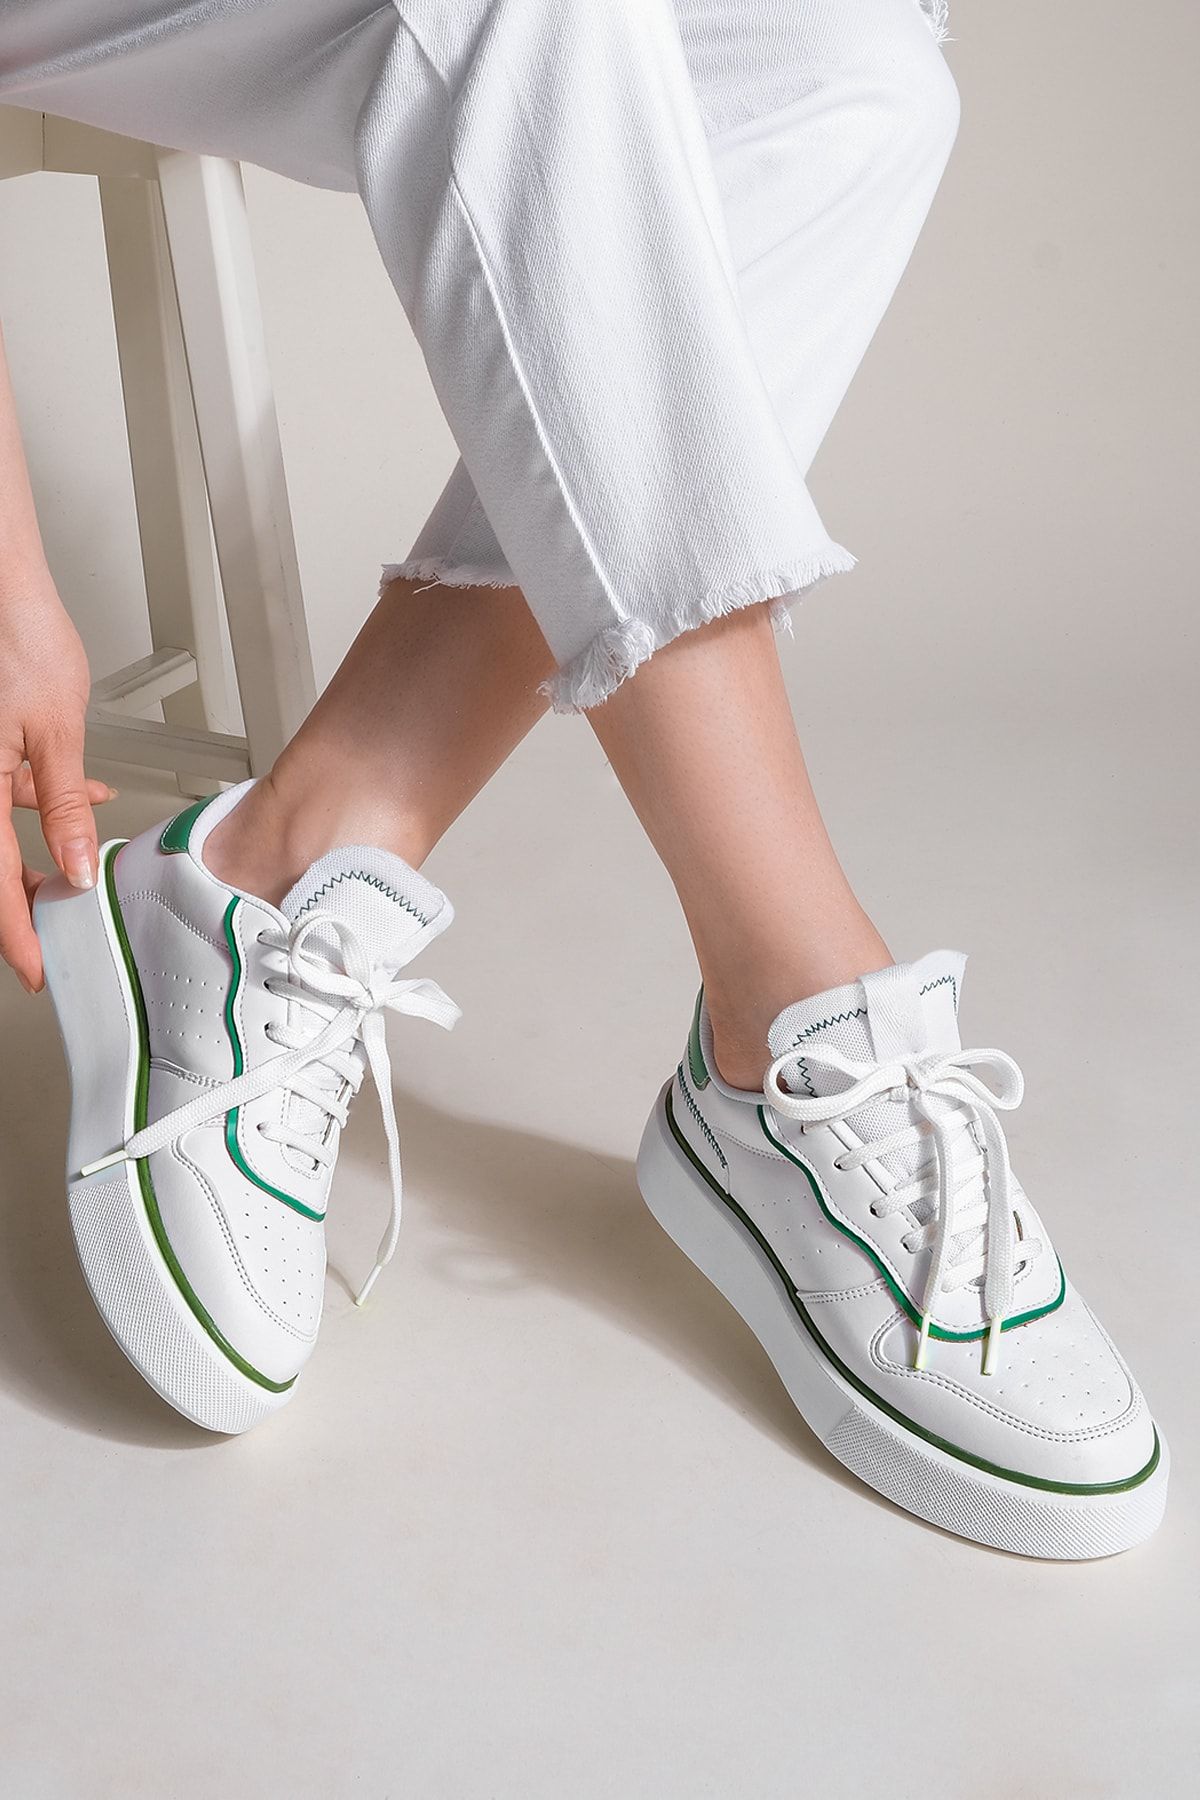 Marjin Kadın Sneaker Yüksek Taban Bağcıklı Spor Ayakkabı Lekya yeşil